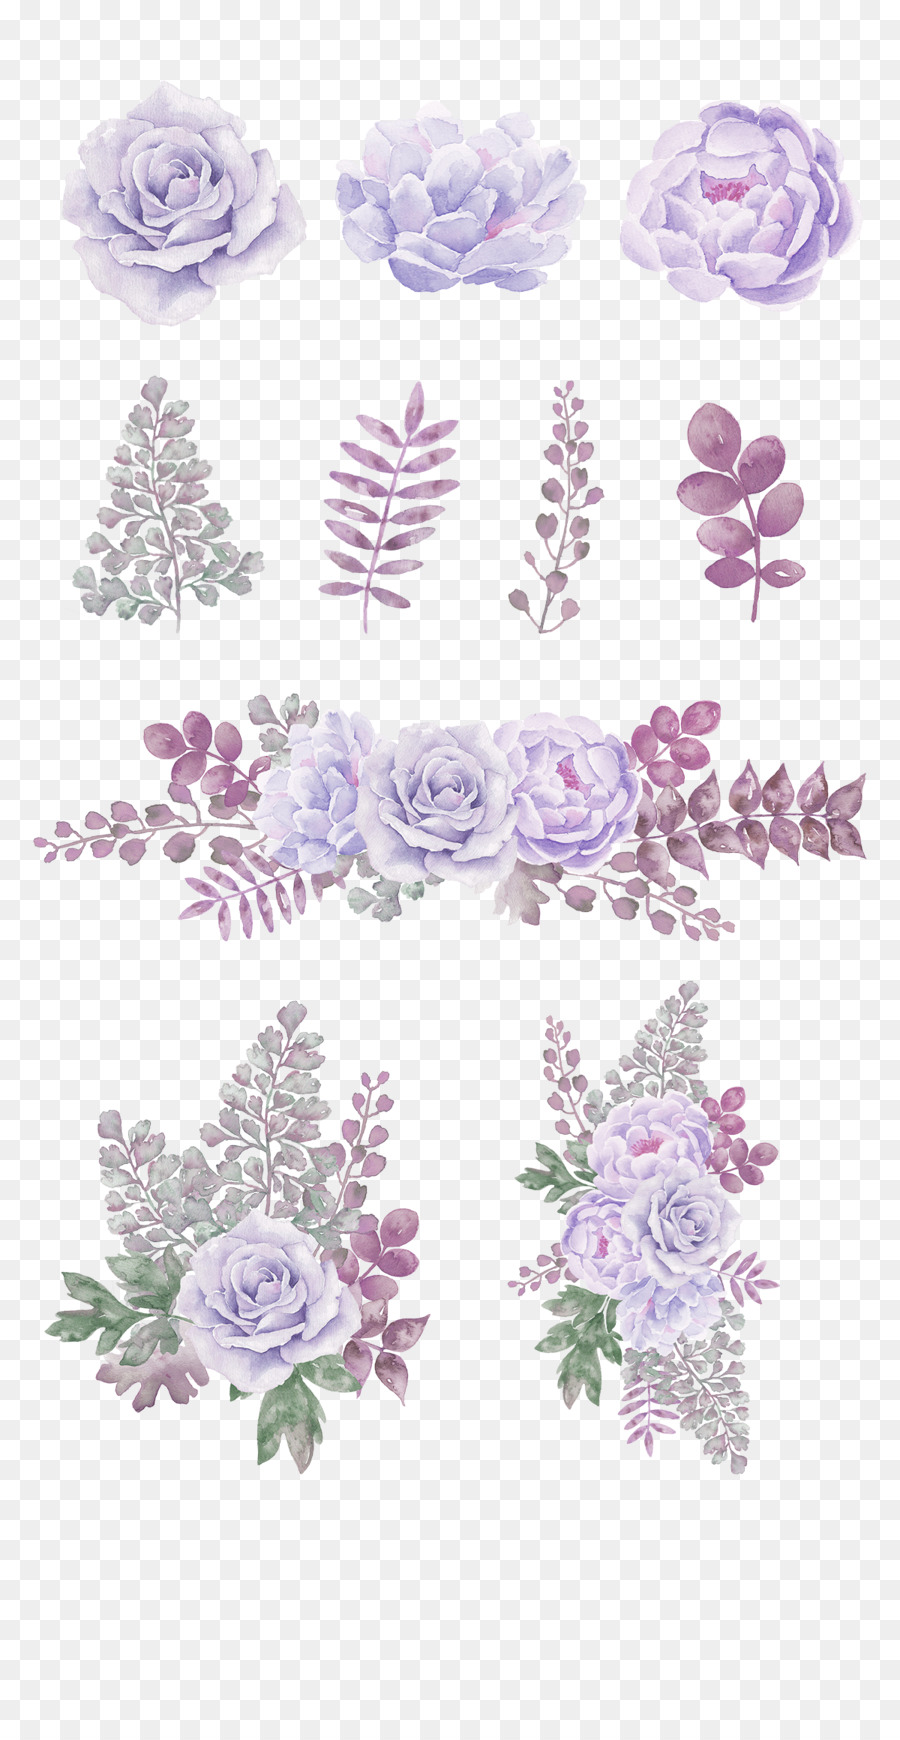 Hoa vẽ bằng sơn nước màu tím